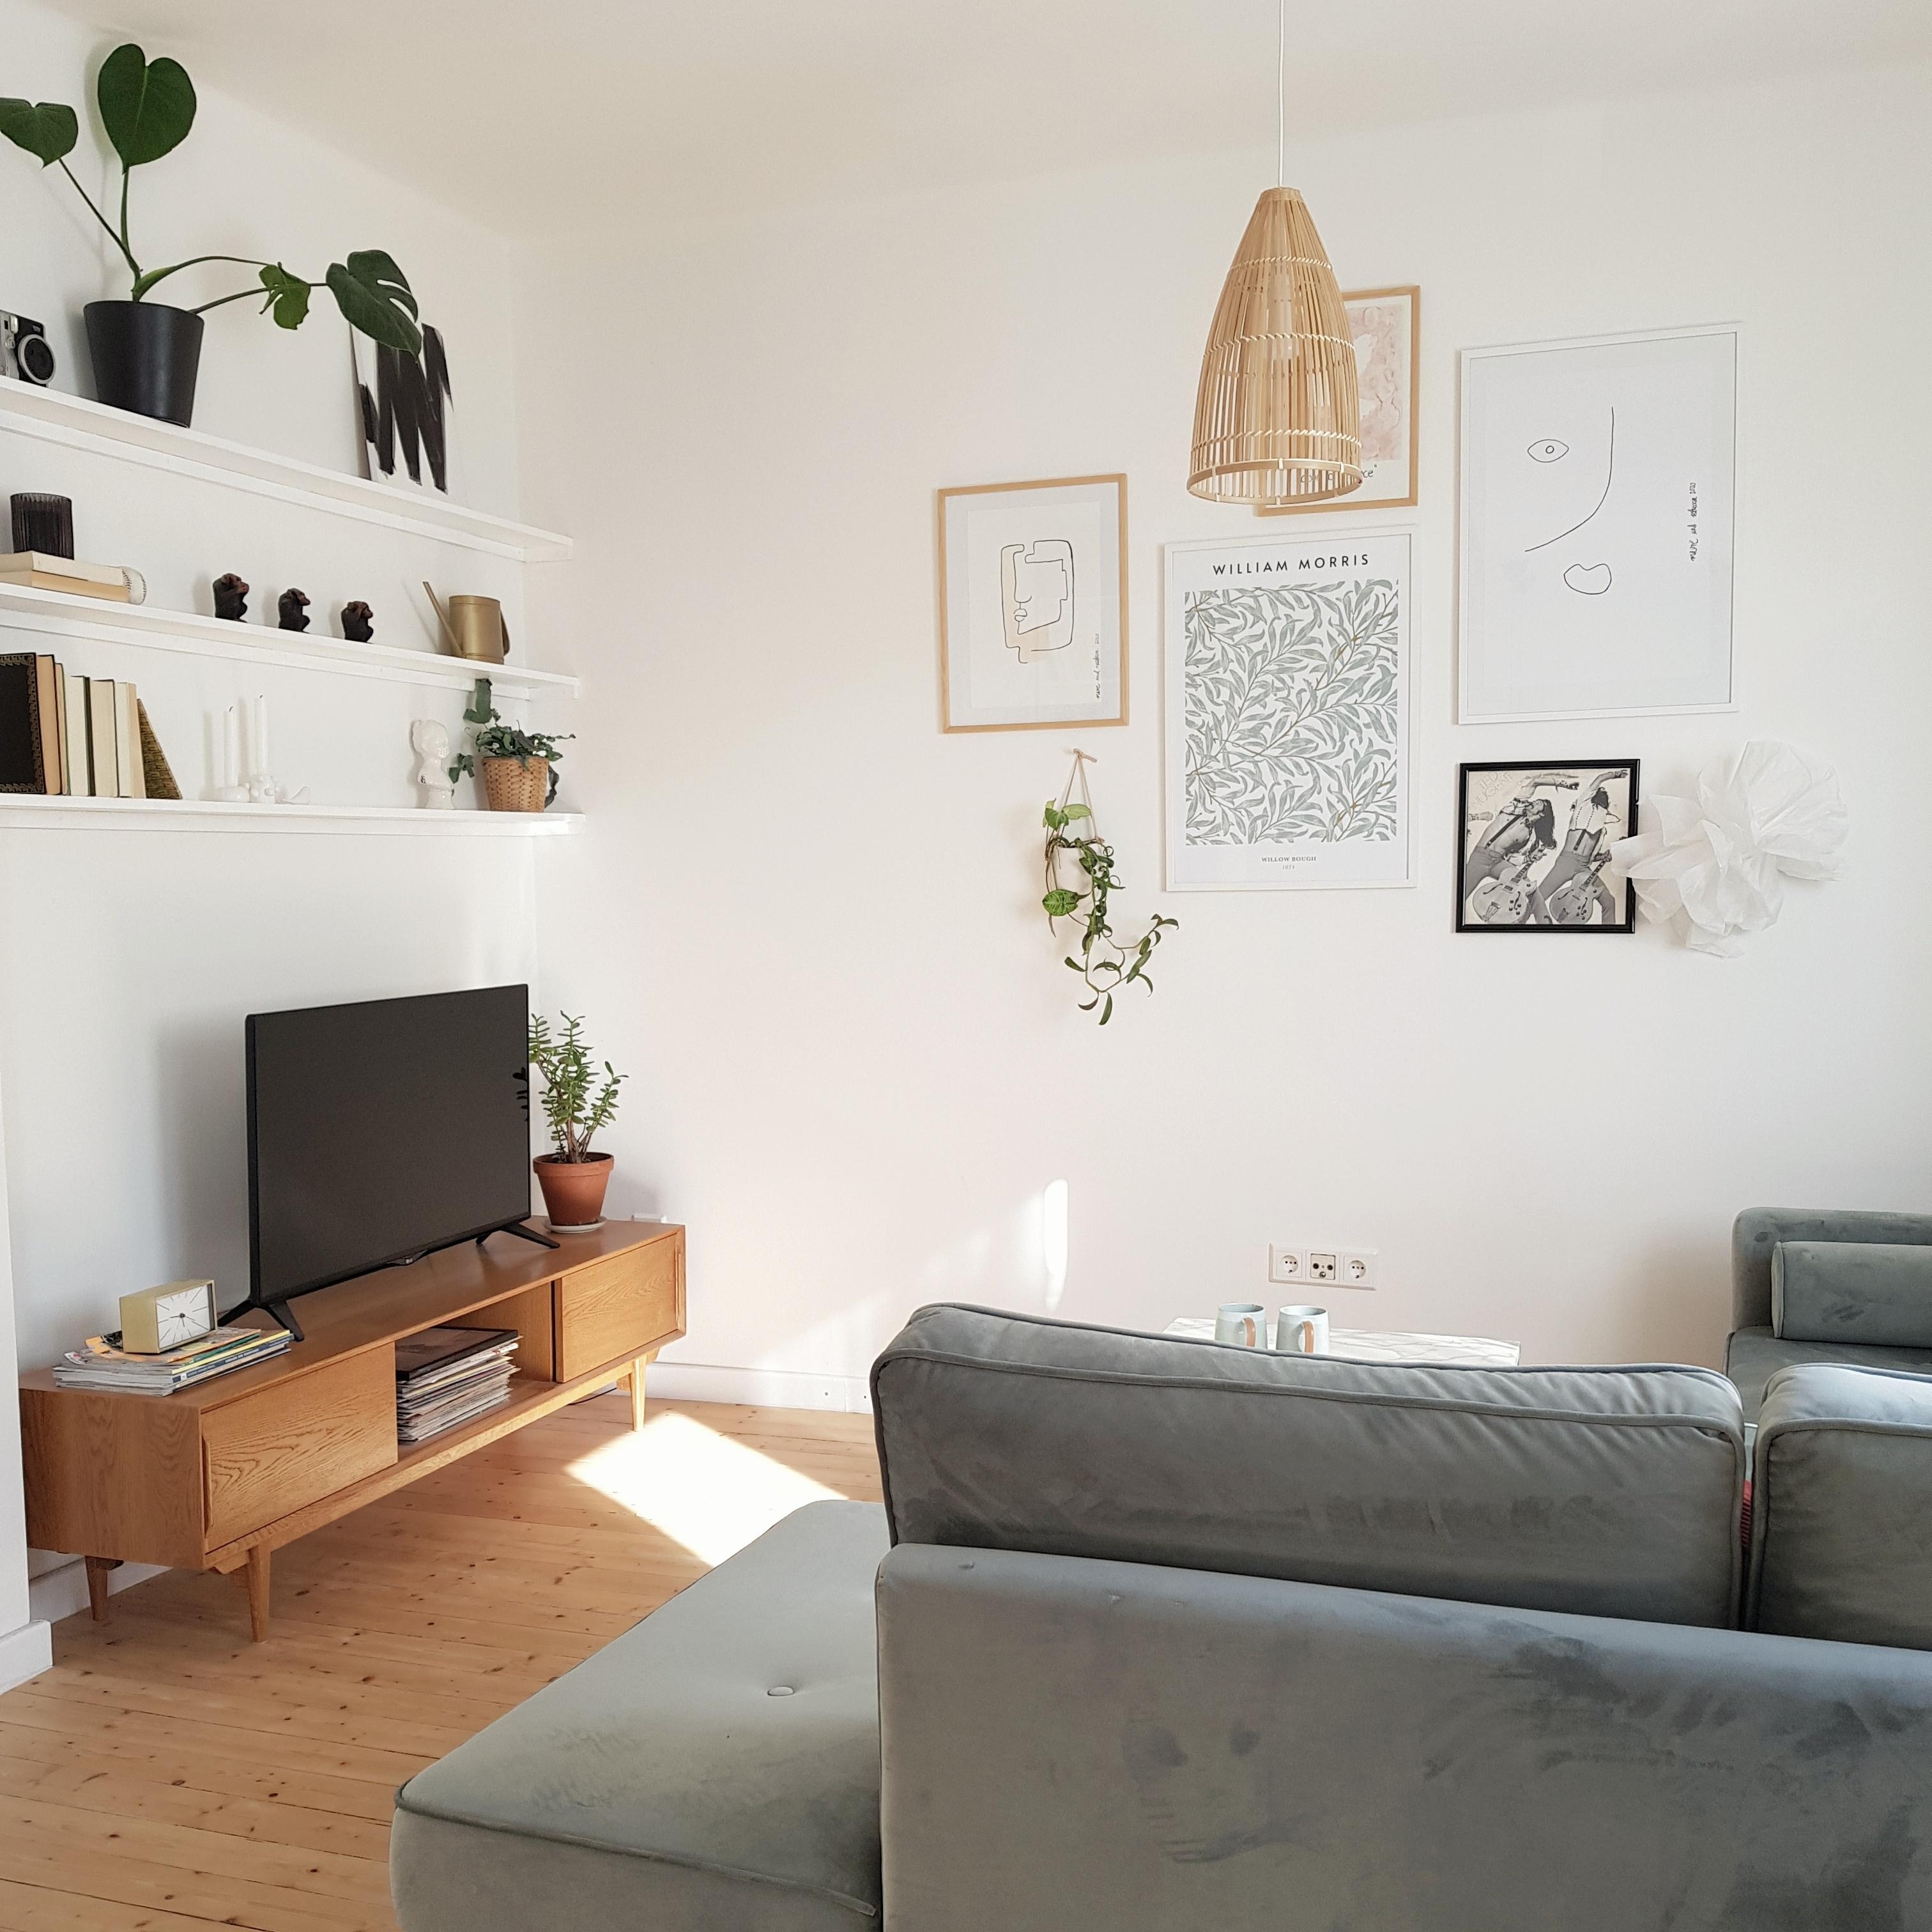 Einen schönen Start in die Woche mit unserem #livingroom zur #livingchallenge 👋